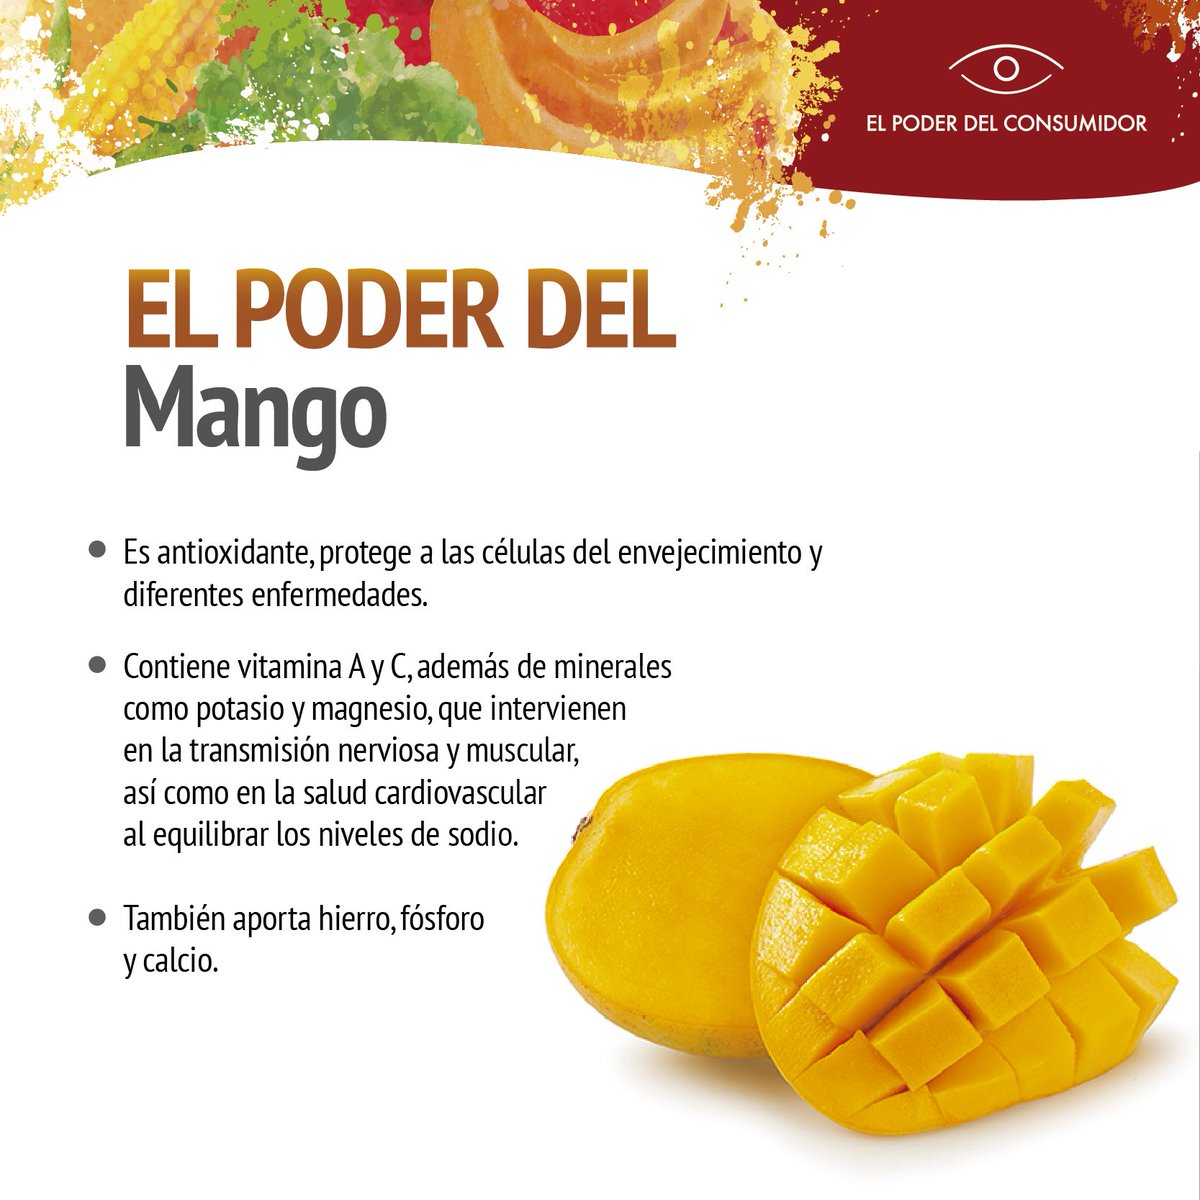 definido llevar a cabo salir Poder del Consumidor on Twitter: "Comer mango aporta vitaminas y minerales  como fósforo, hierro y calcio: https://t.co/tT8b9kUISk" / Twitter